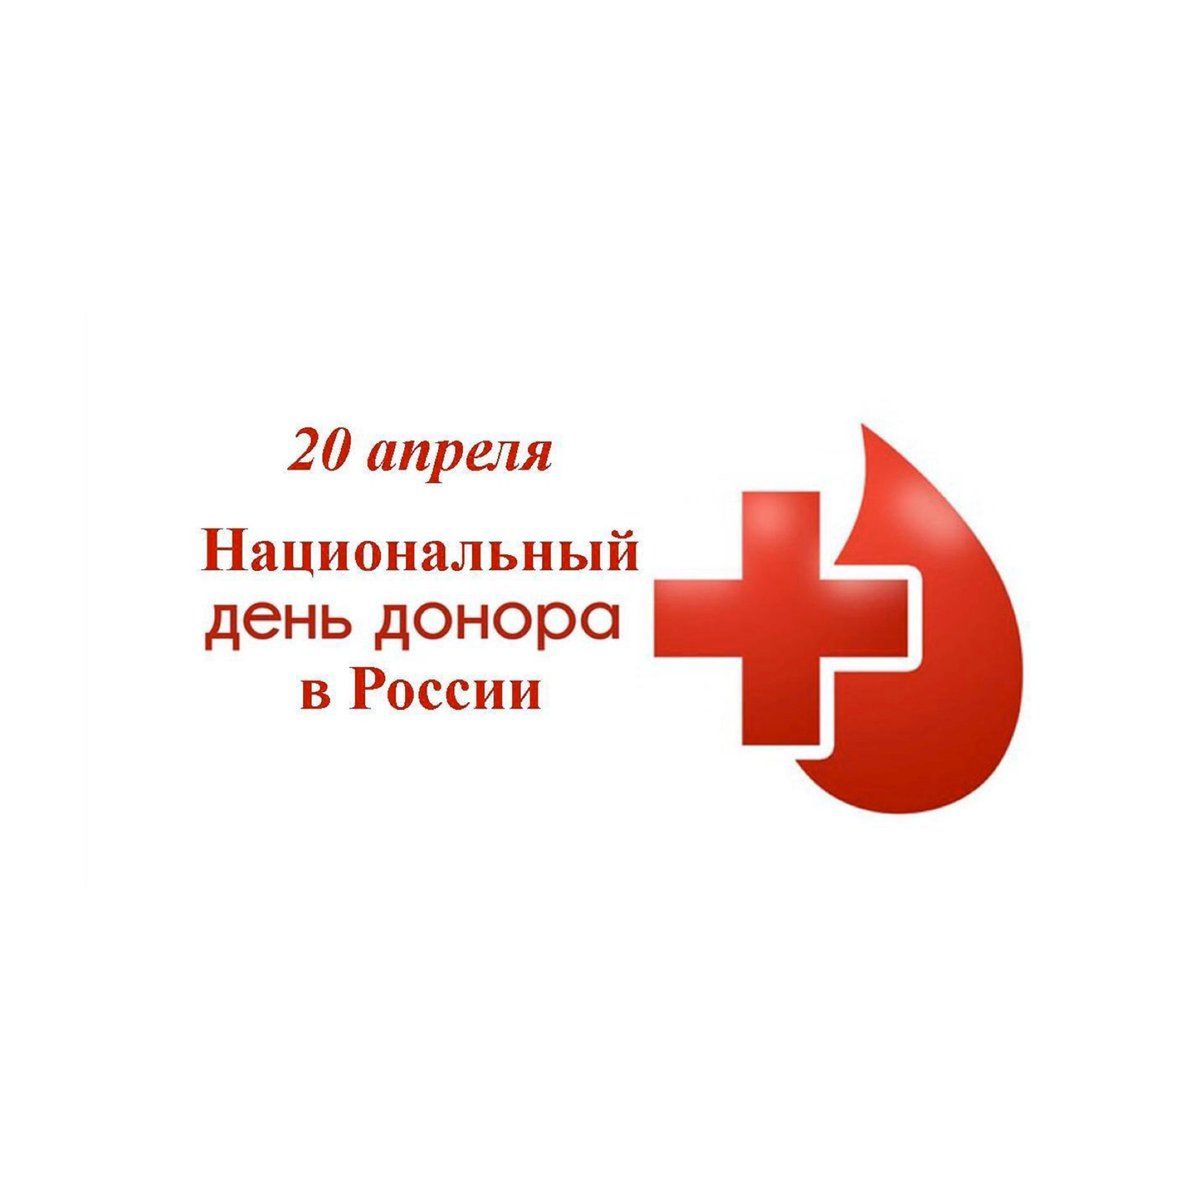 Сдай кровь - спаси жизнь!